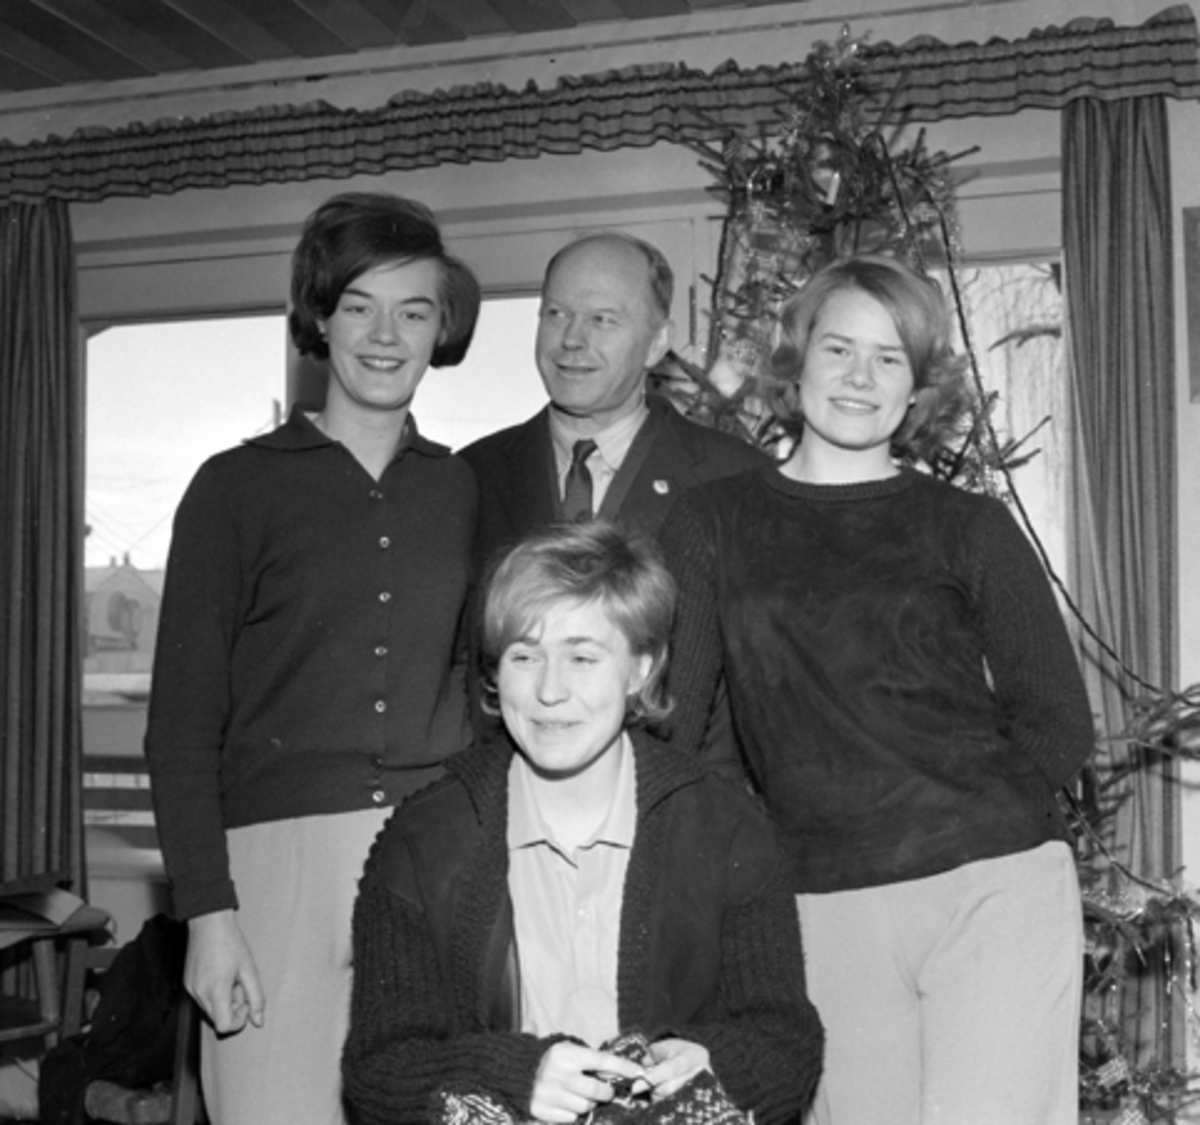 Fra venstre: Randi Elisabet Nilsen, Bjørn Norderhaug, Aud Groven. Foran Mette Rosenvinge. 